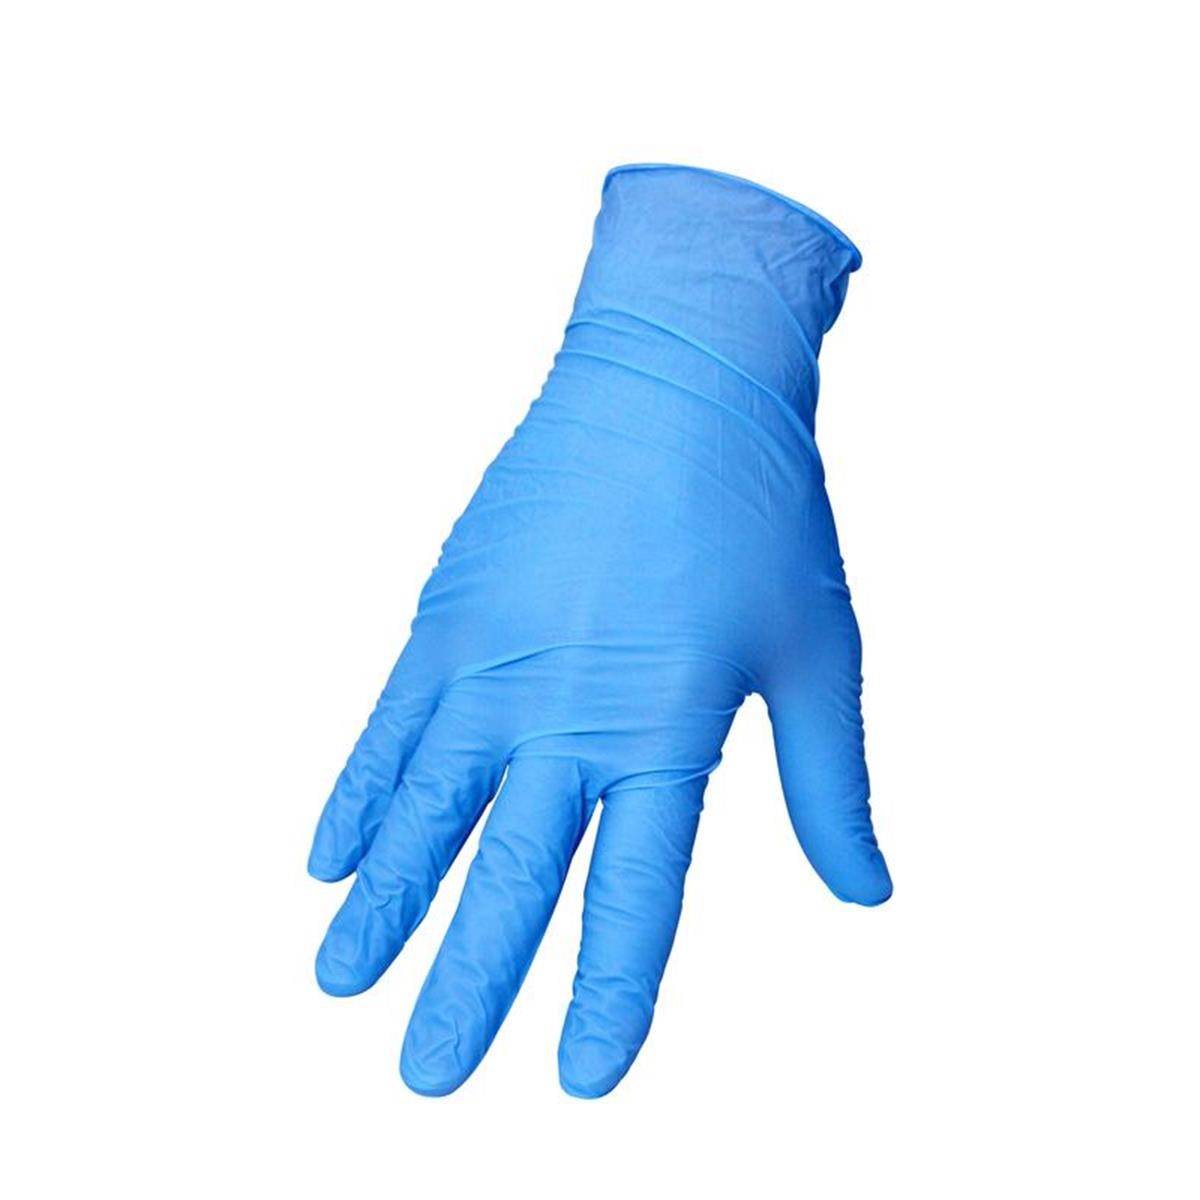 Motion Pro Nitrile Gloves  Blue, 100-pack, 0.5 mm